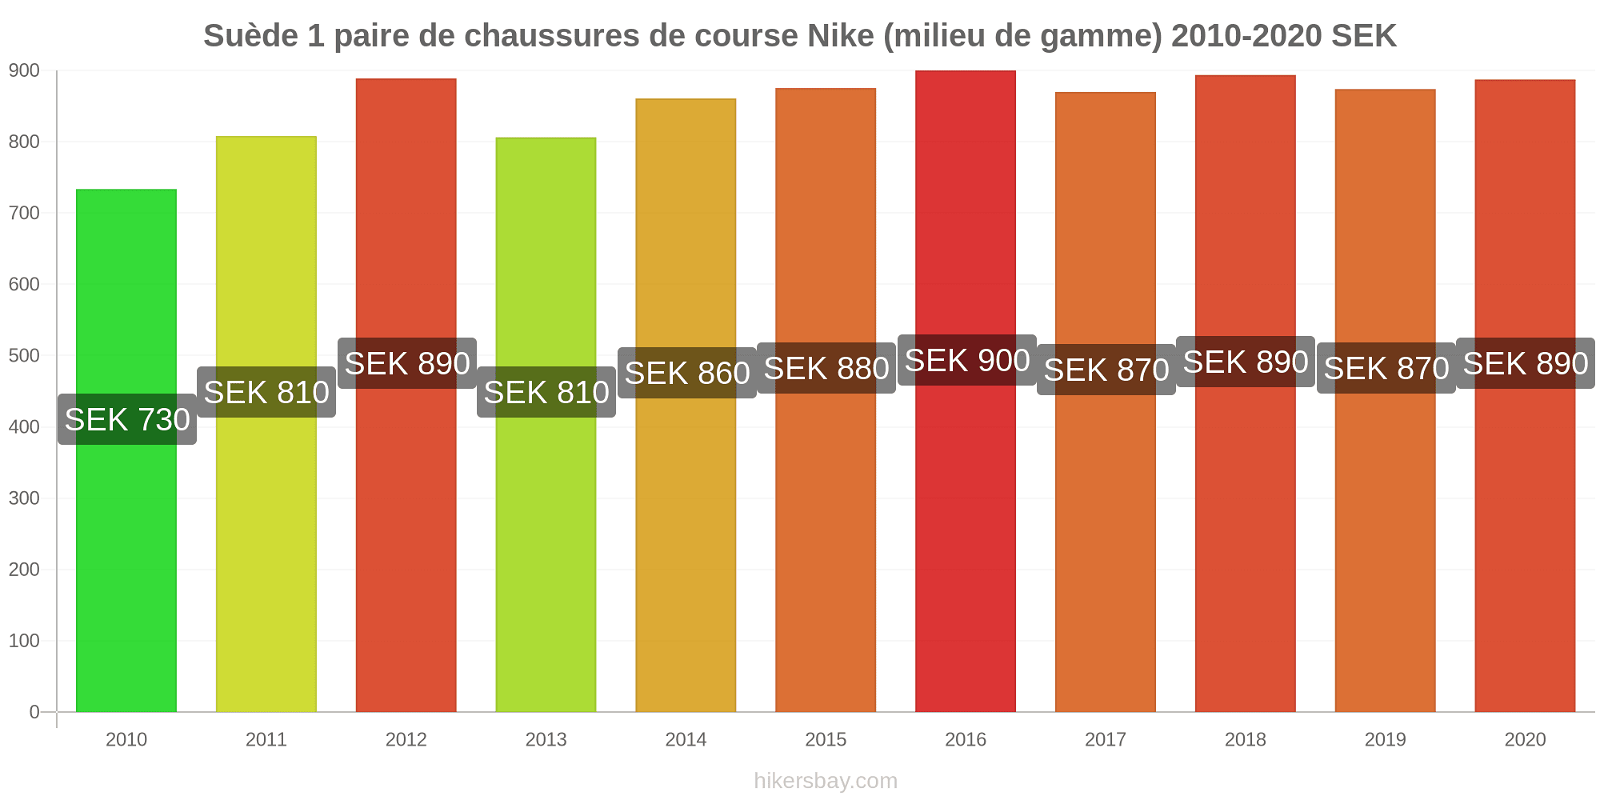 Suède changements de prix 1 paire de chaussures de course Nike (milieu de gamme) hikersbay.com